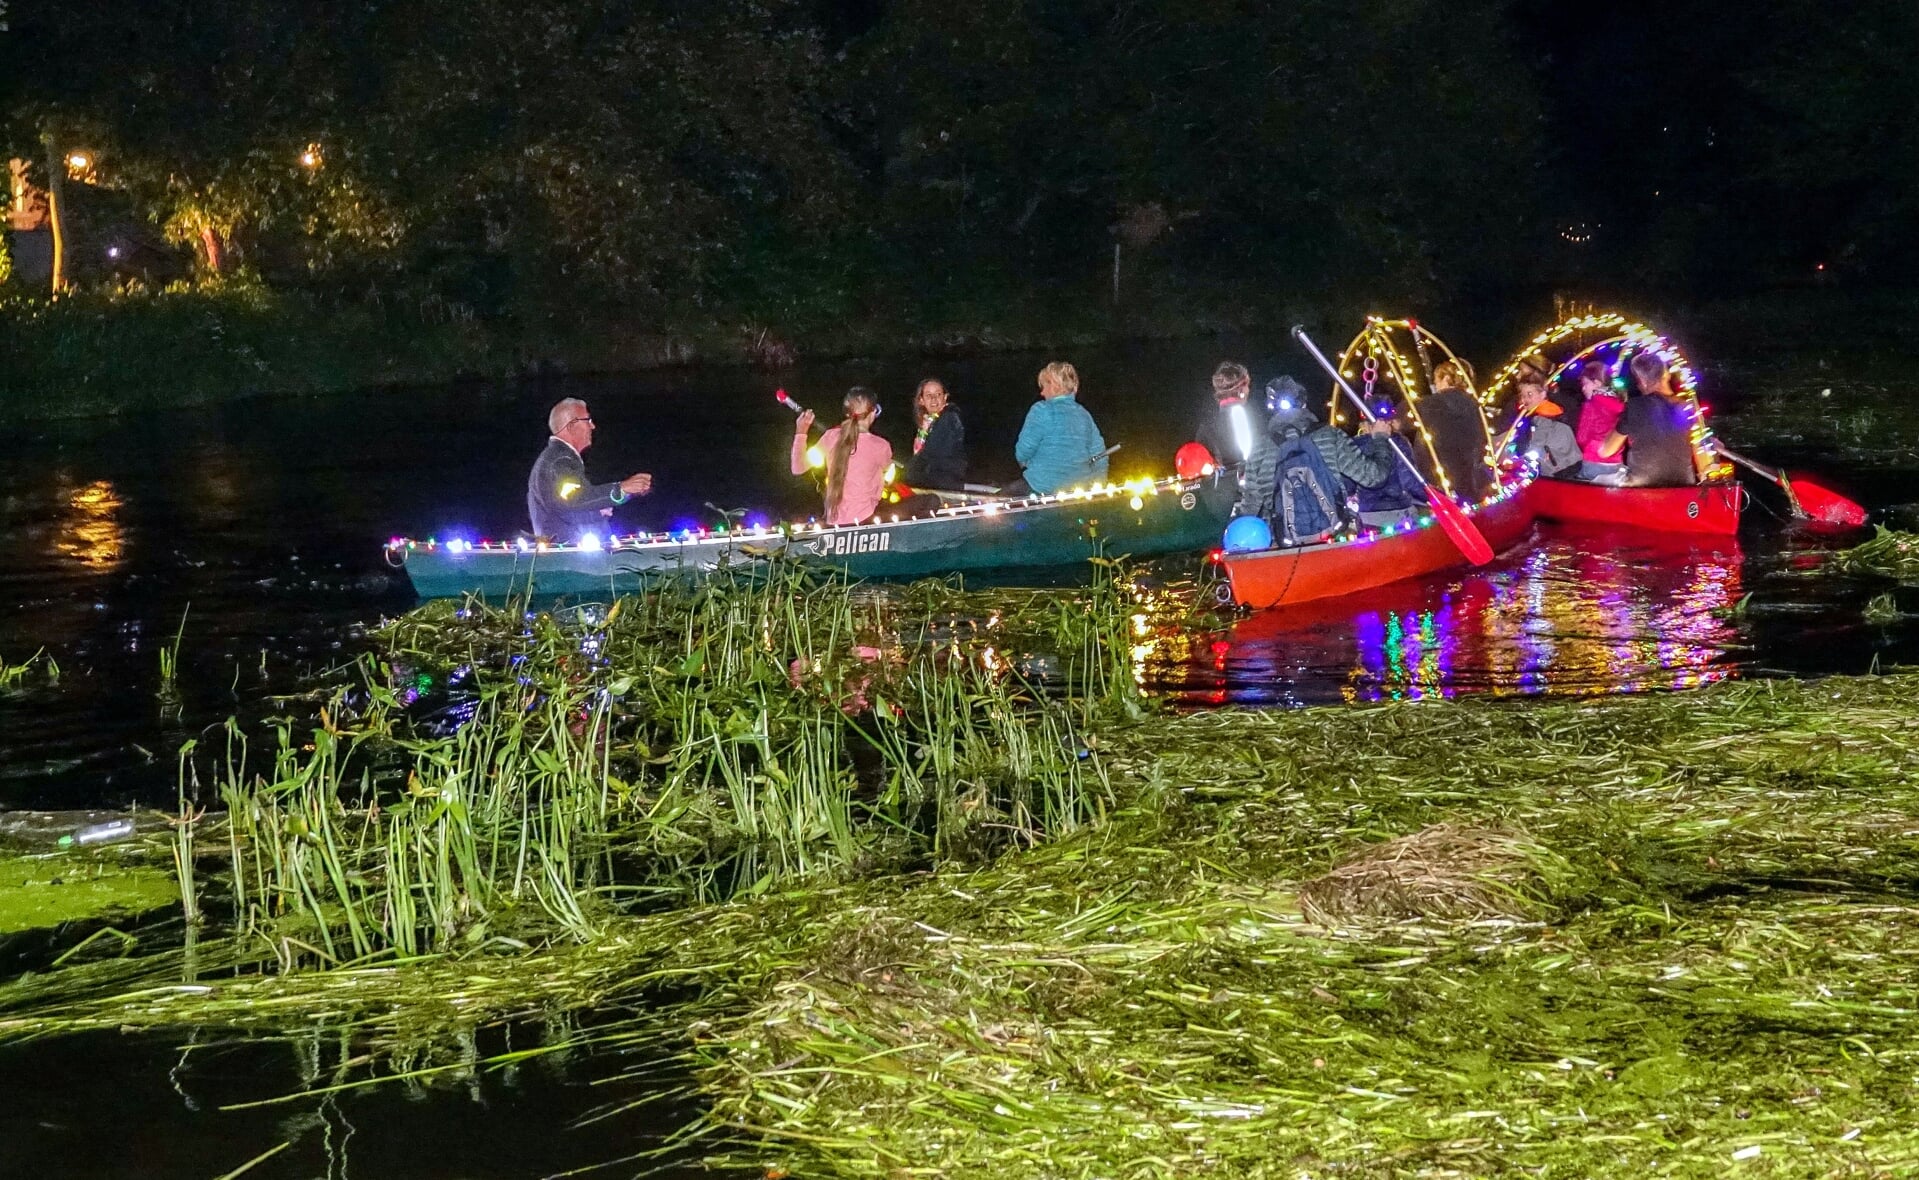 Met feëeriek verlichte kano's in het donker over de rivier peddelen zit er dit jaar niet in. 